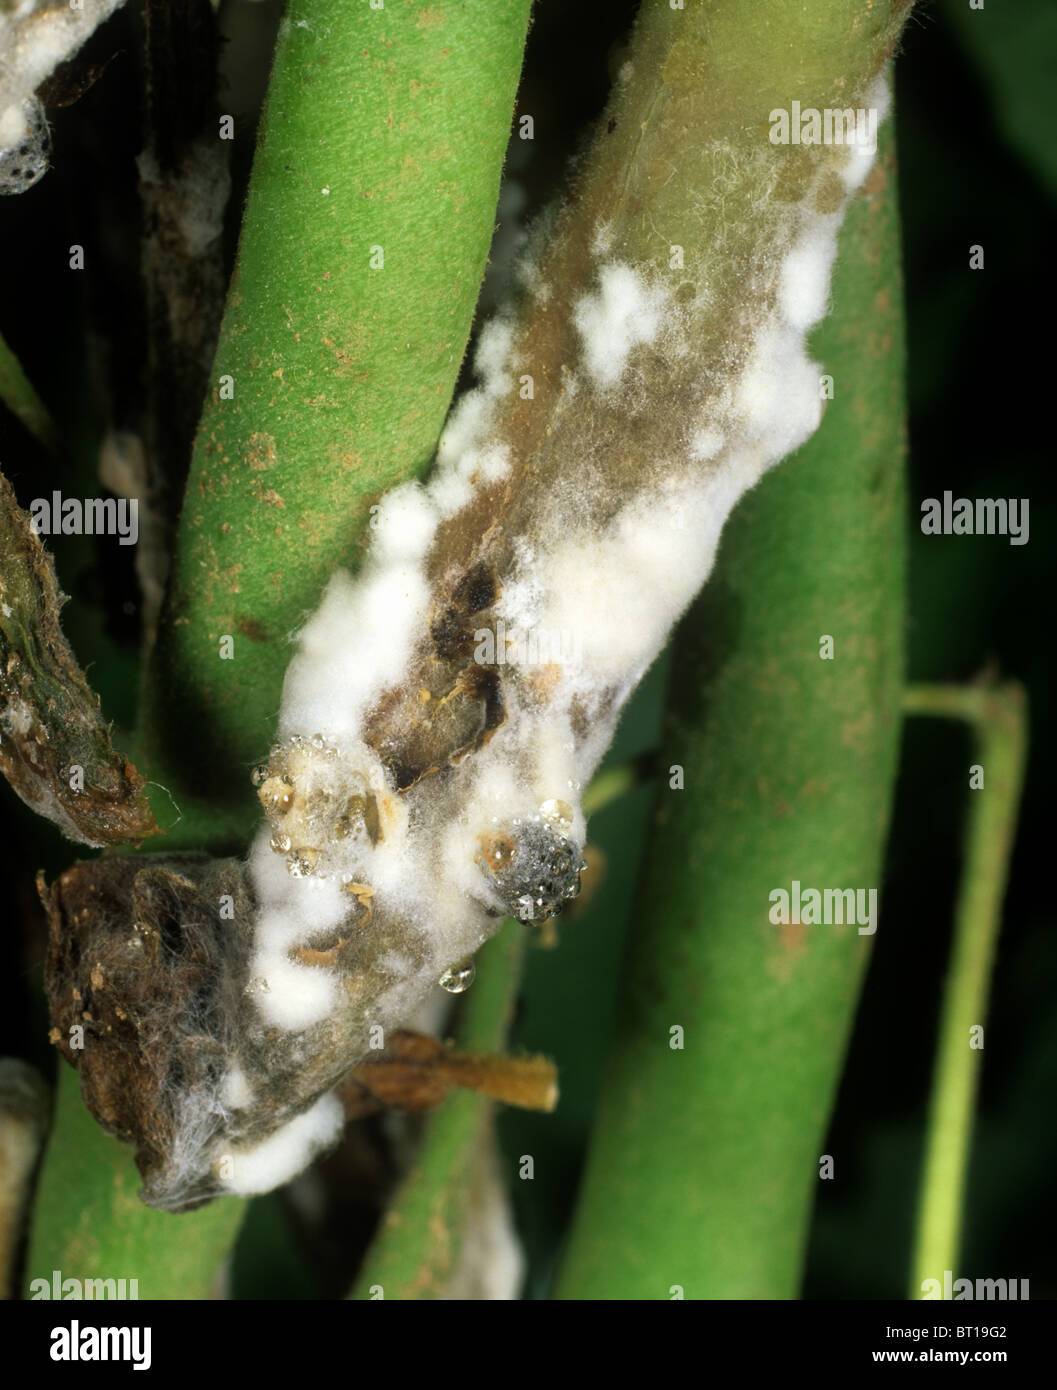 Pourriture & souches (Sclerotinia sclerotiorum sclérotes) sur vert Phaseolus bean pods et la tige Banque D'Images